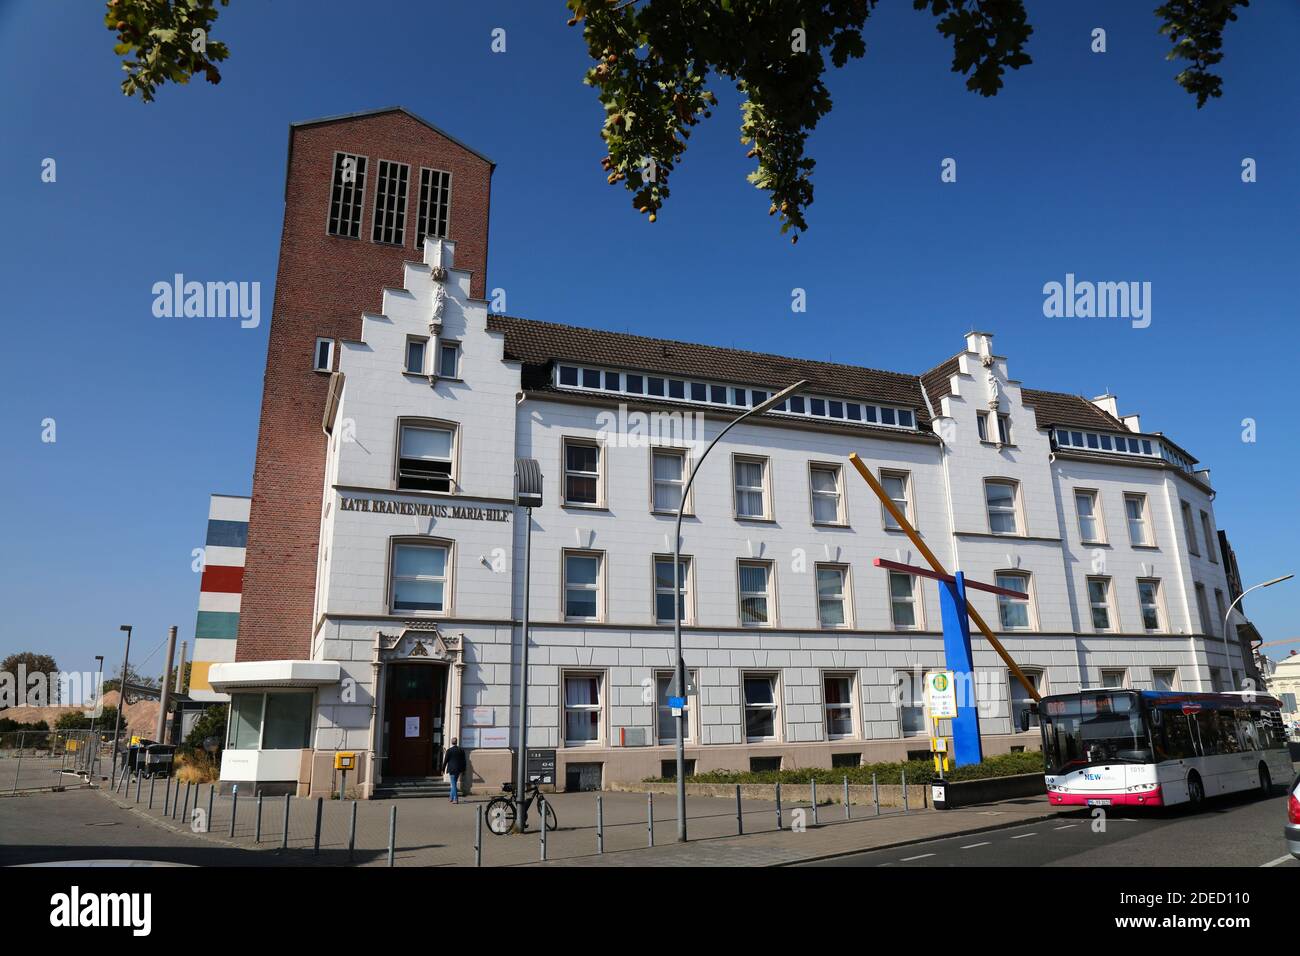 MÖNCHENGLADBACH, DEUTSCHLAND - 18. SEPTEMBER 2020: Katholisches Maria-Hilf-Krankenhaus in Mönchengladbach, einer bedeutenden Stadt in Nordrhein-Westfalen Stockfoto